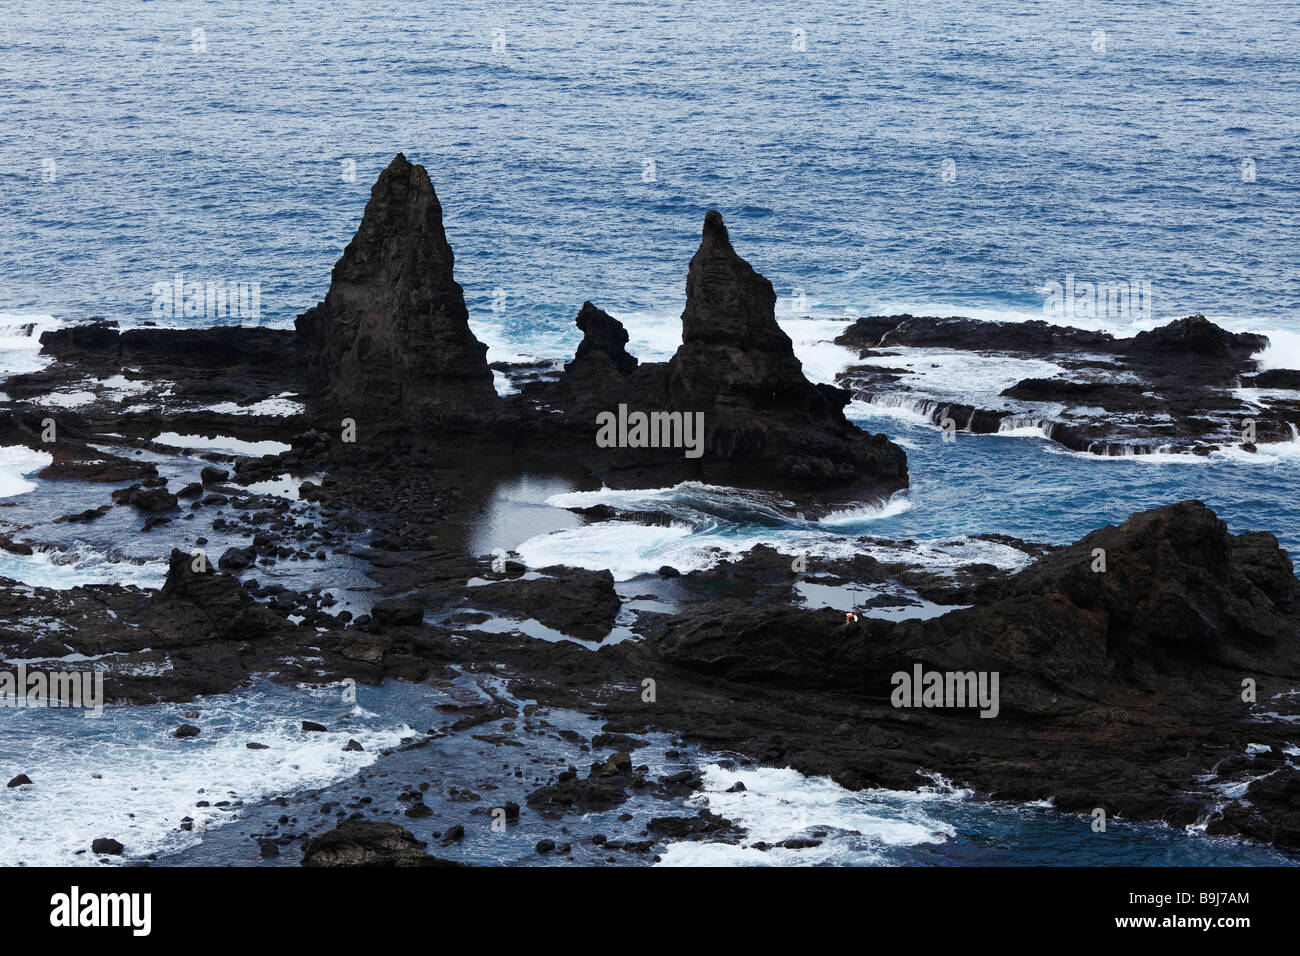 Volcanic rocks near Arguamul, Roques de Arguamul, La Gomera, Canary Islands, Spain, Europe Stock Photo